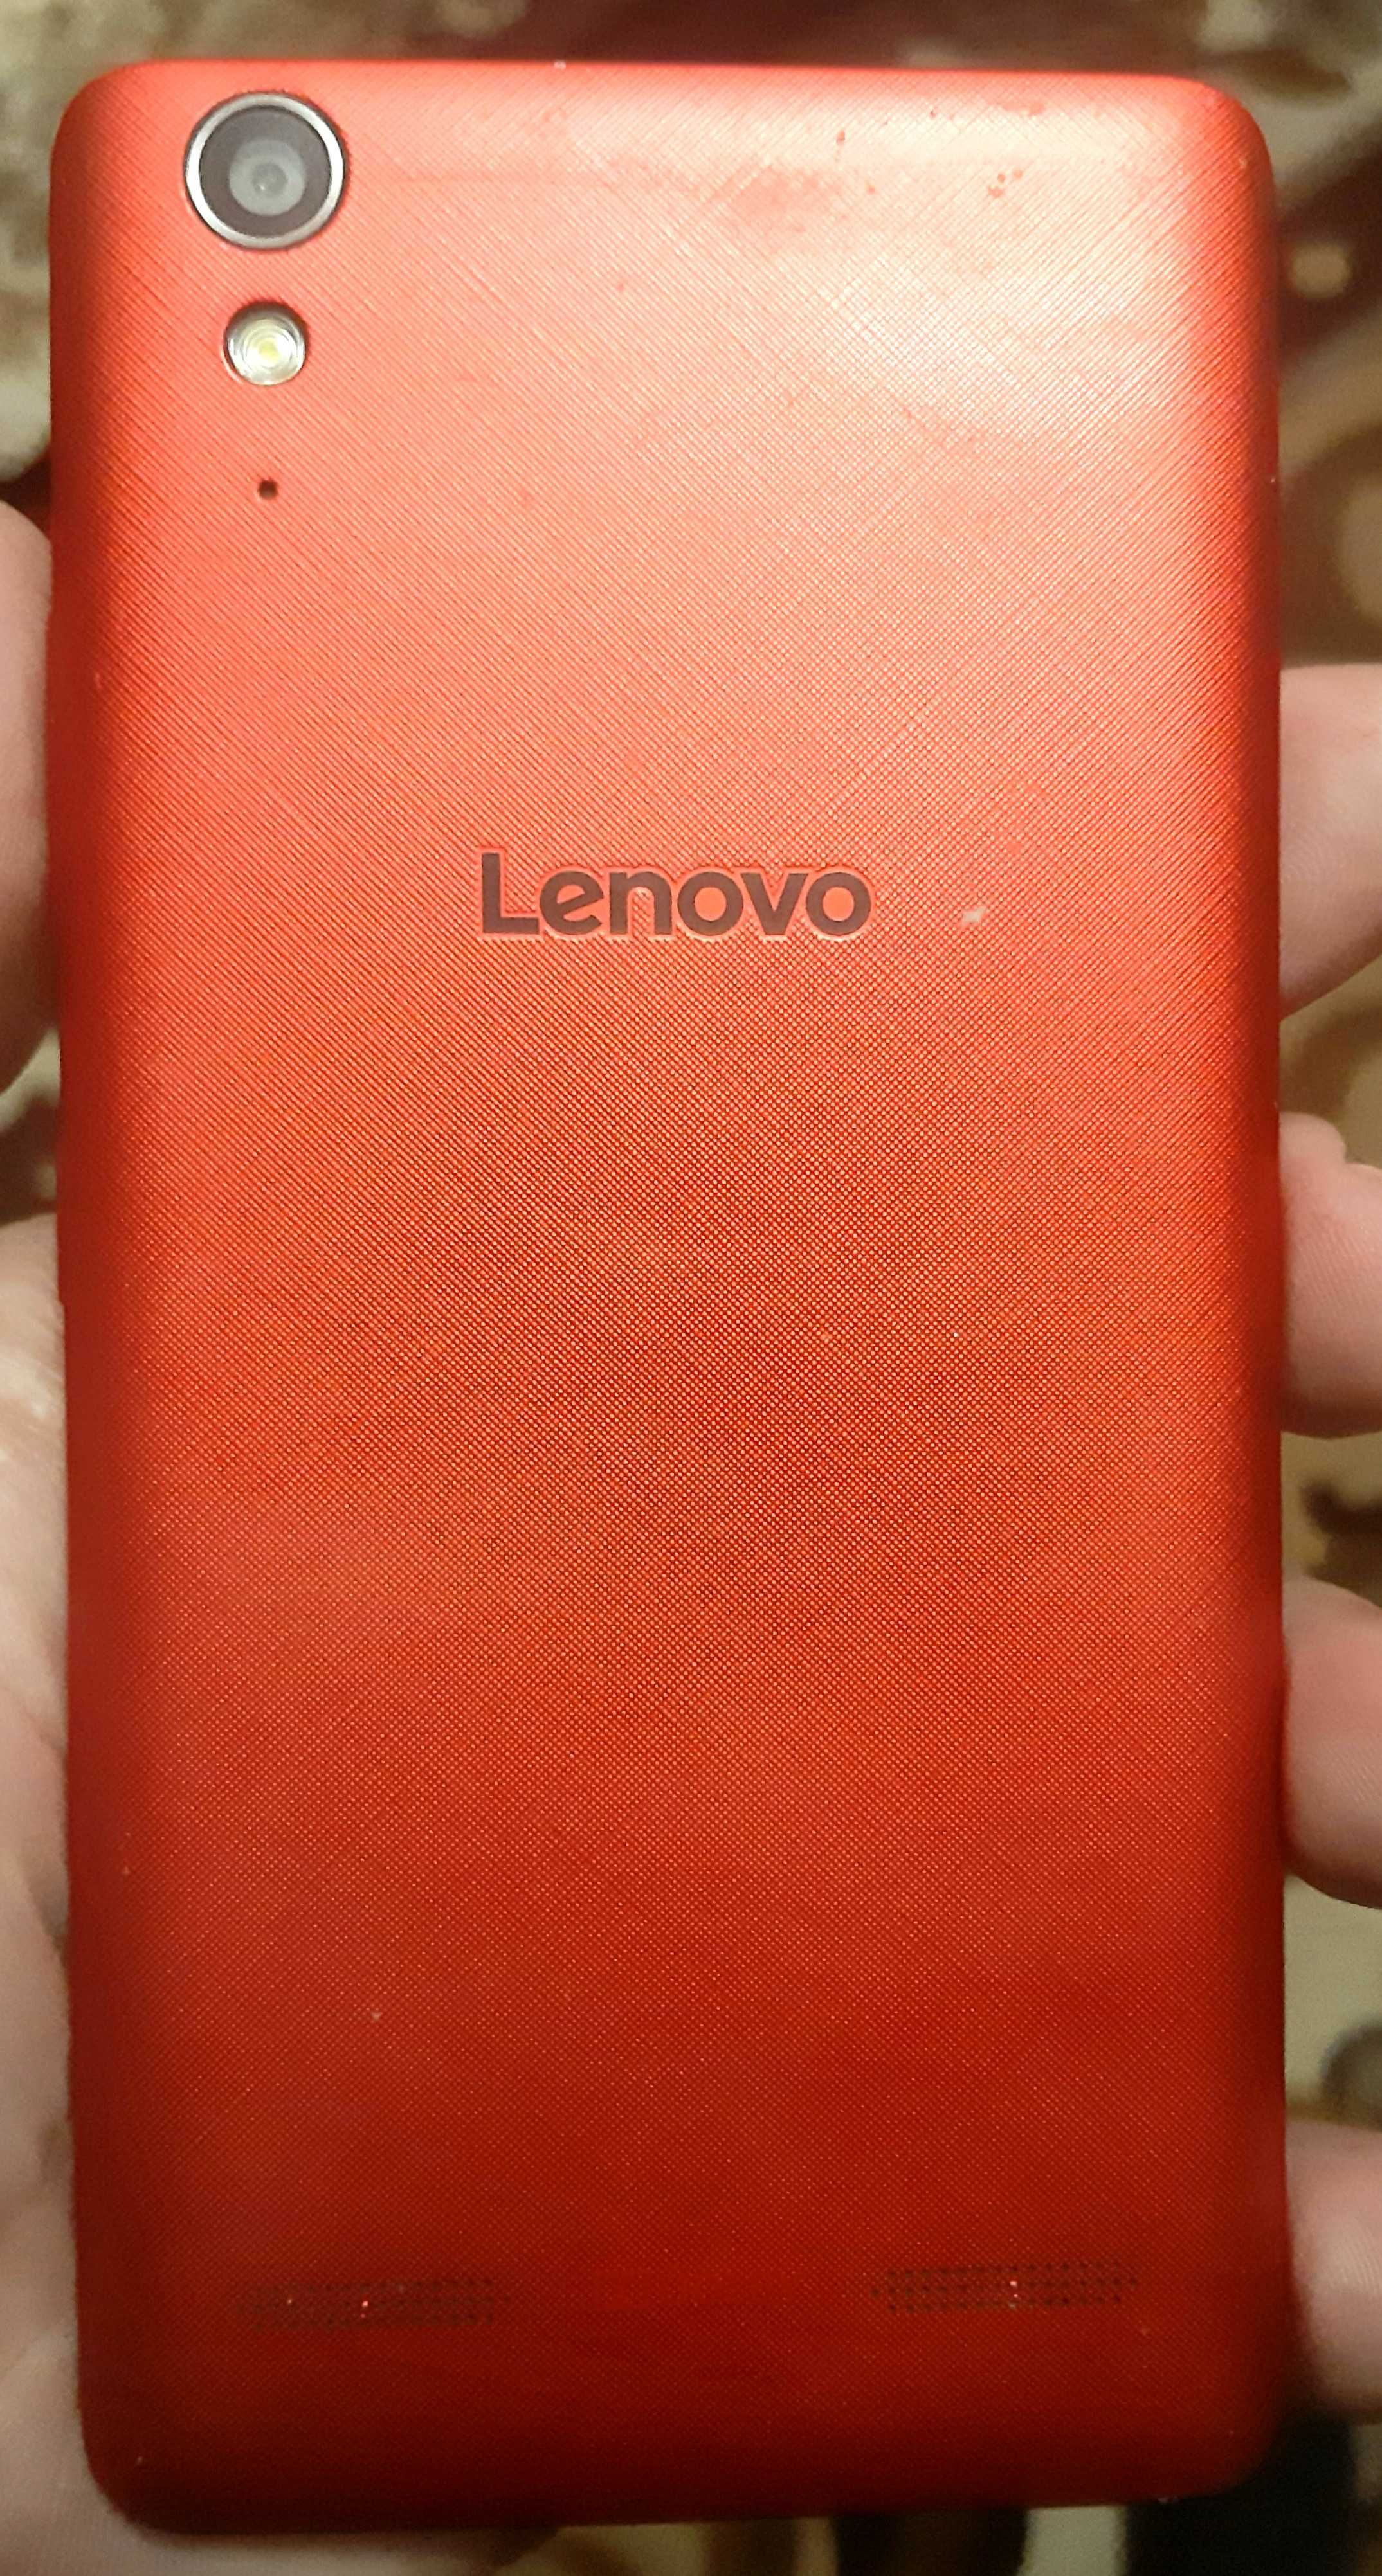 Lenovo model:A6010